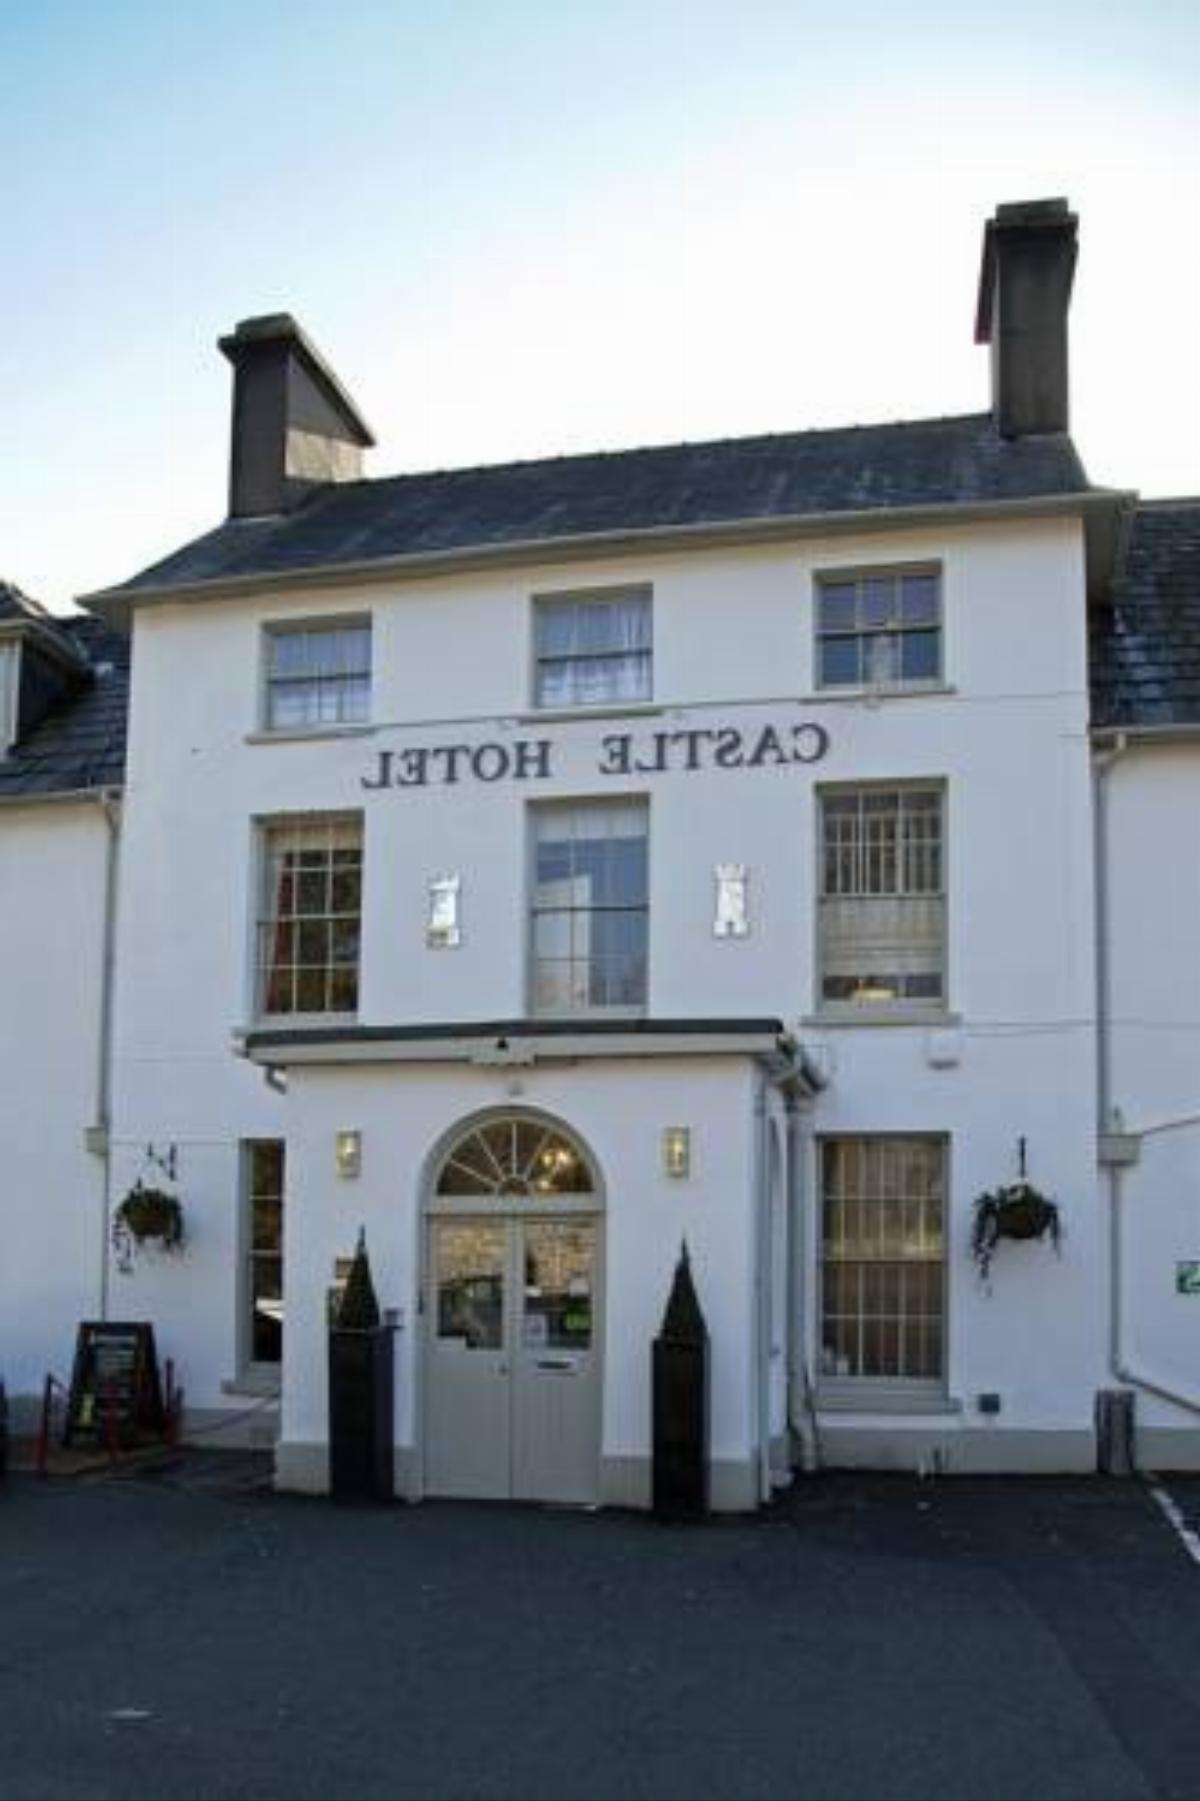 Brecon Castle Hotel Brecon United Kingdom